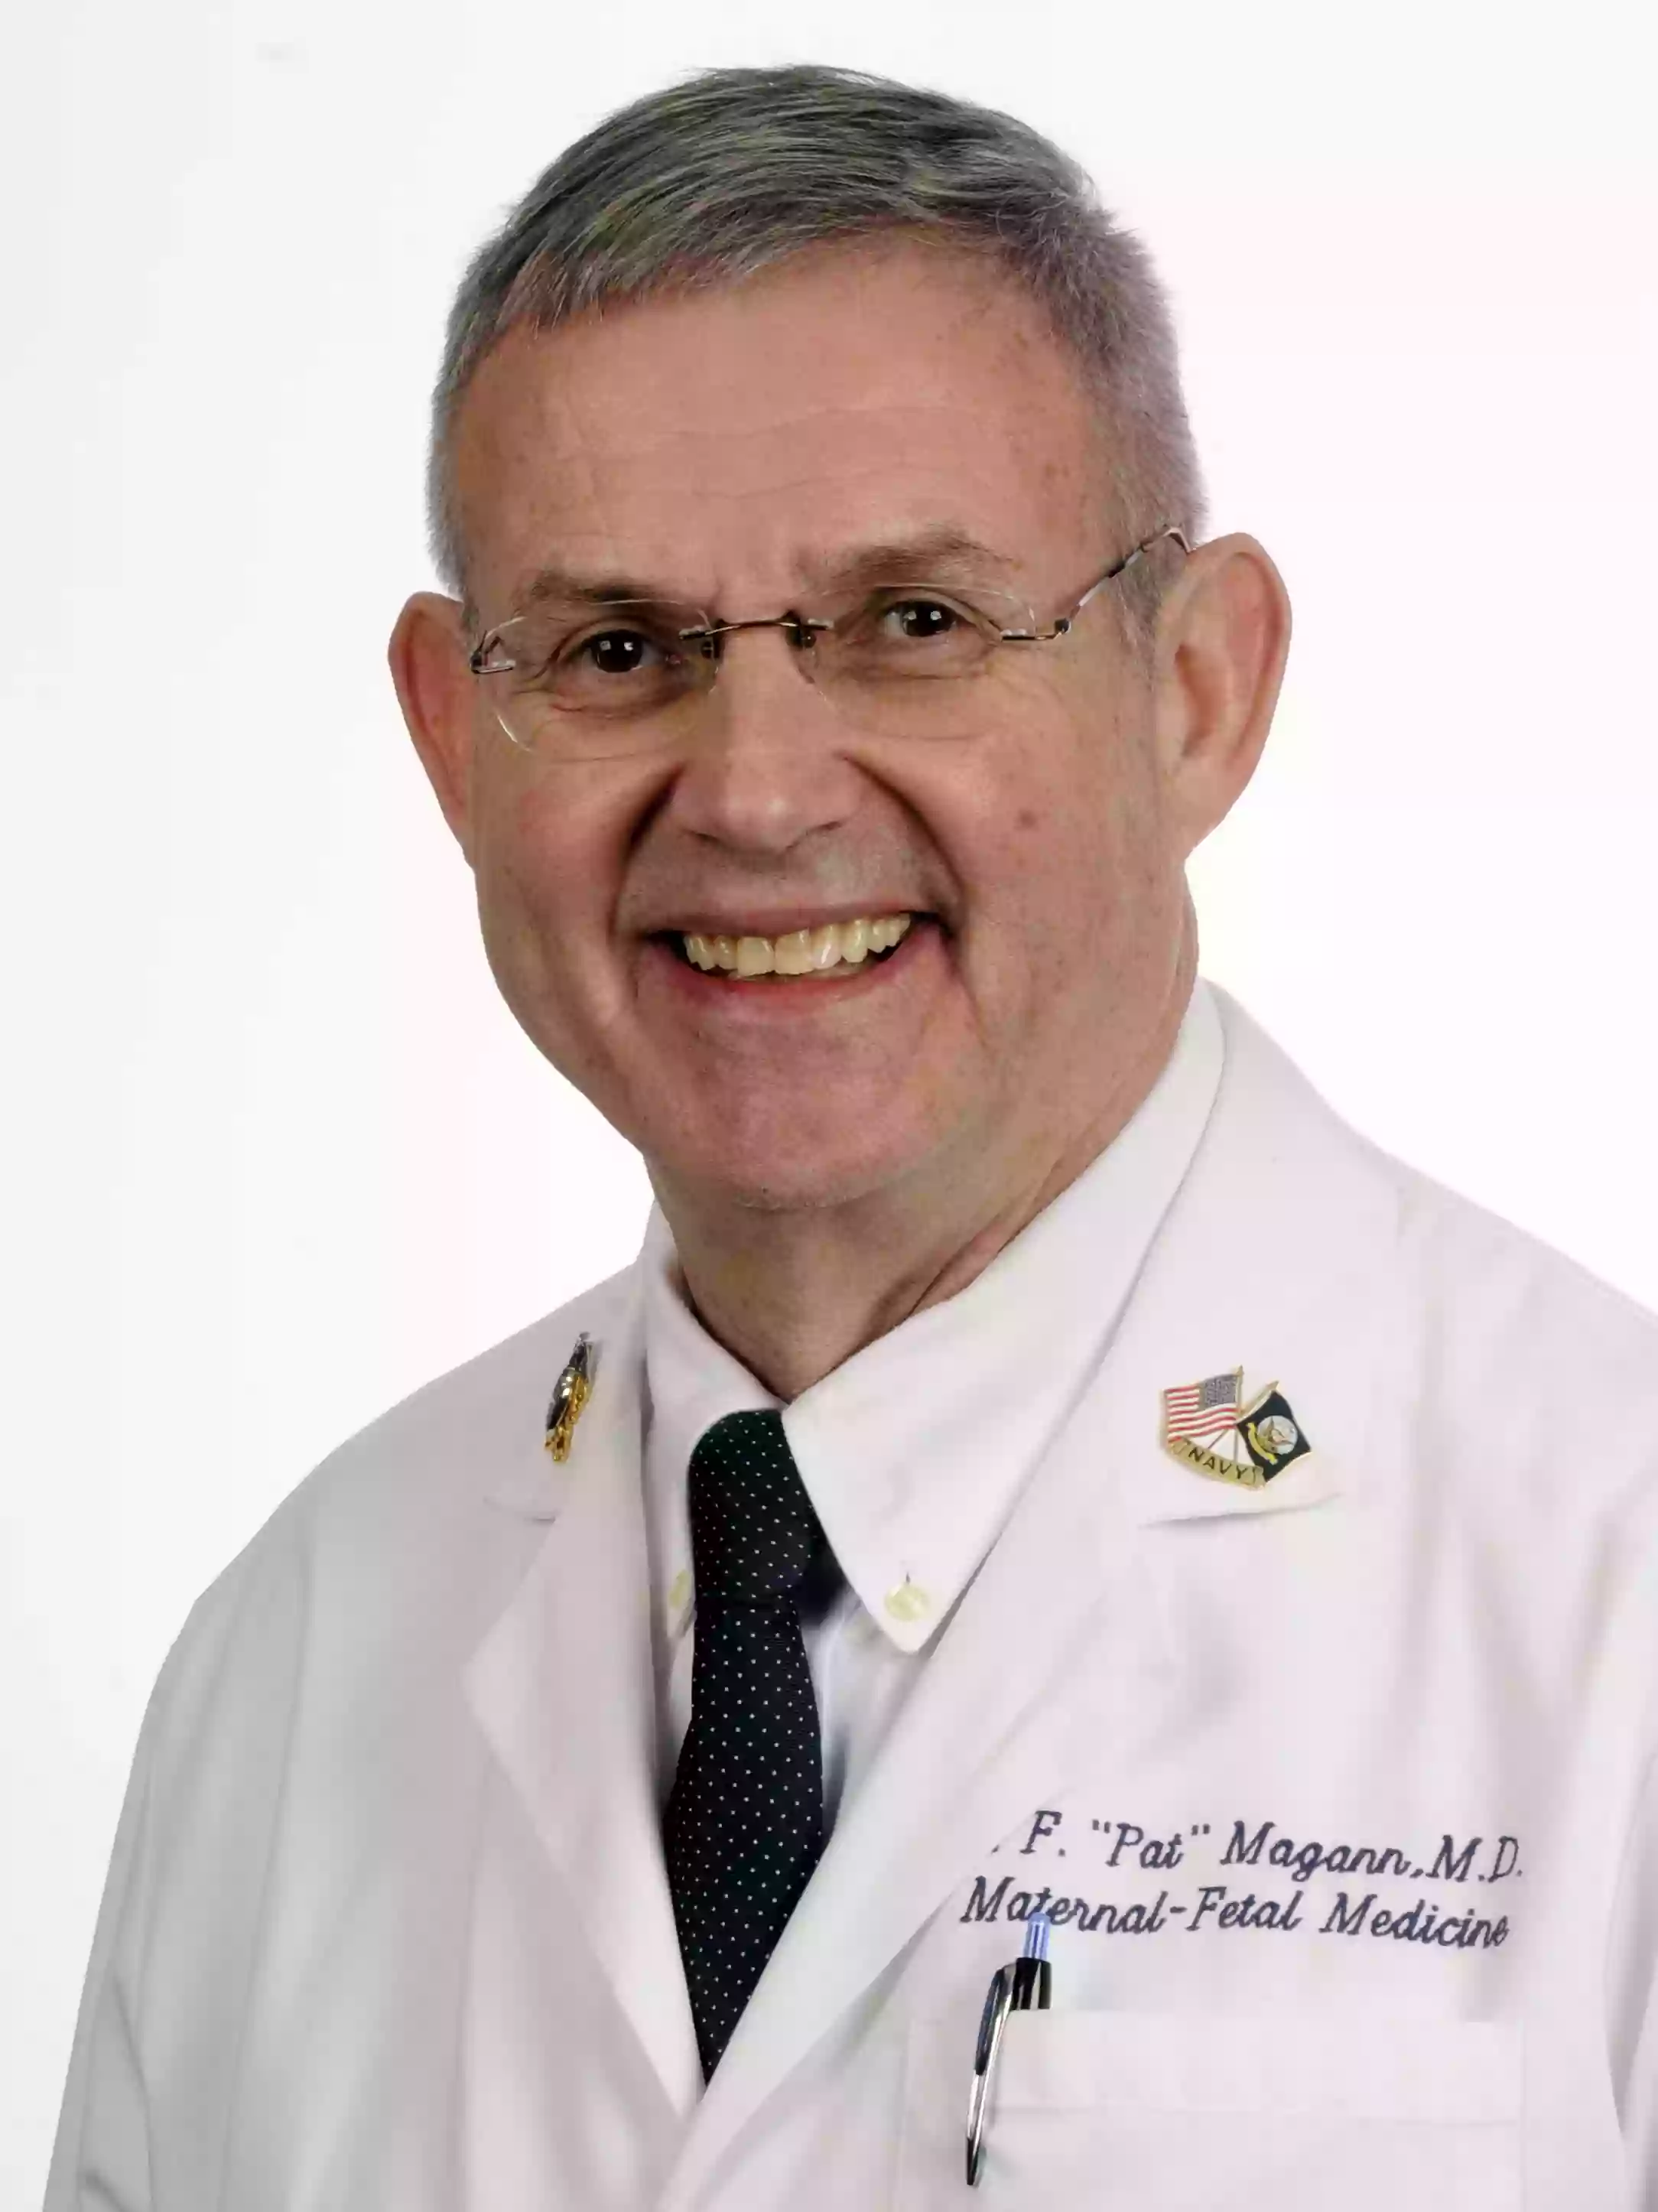 UAMS Health - Everett F. "Pat" Magann, M.D.